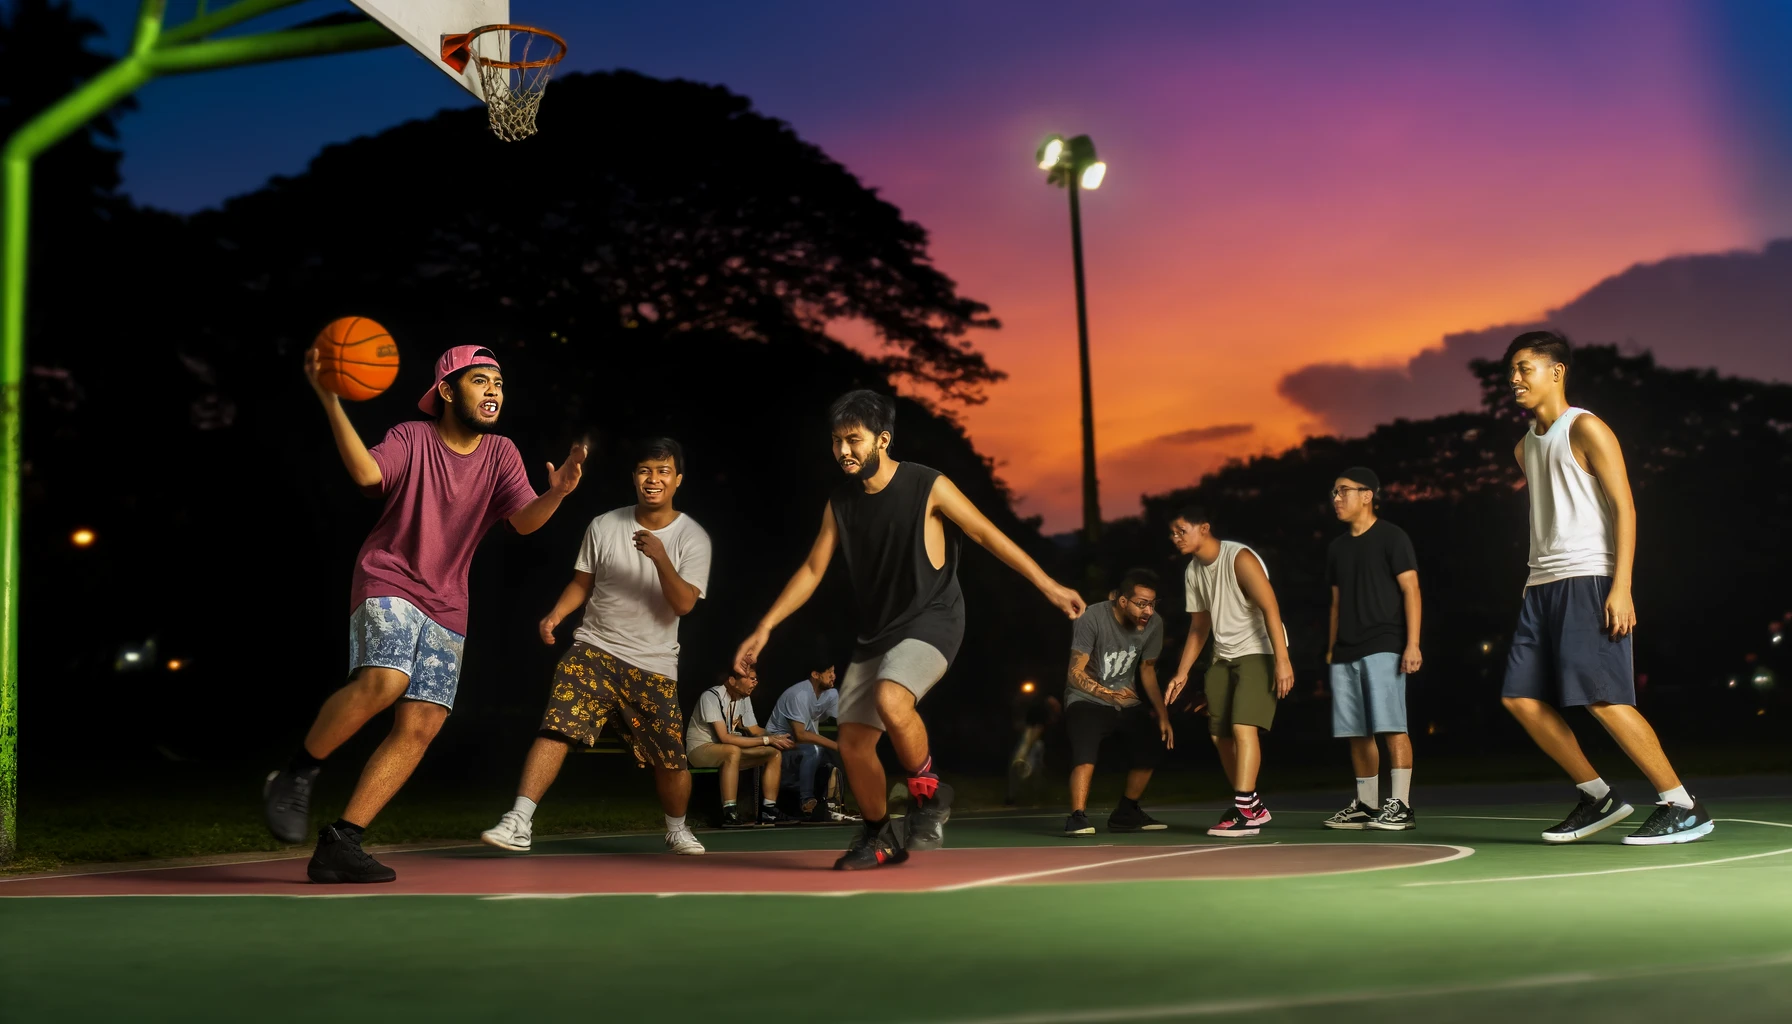 夕暮れのバスケットボール